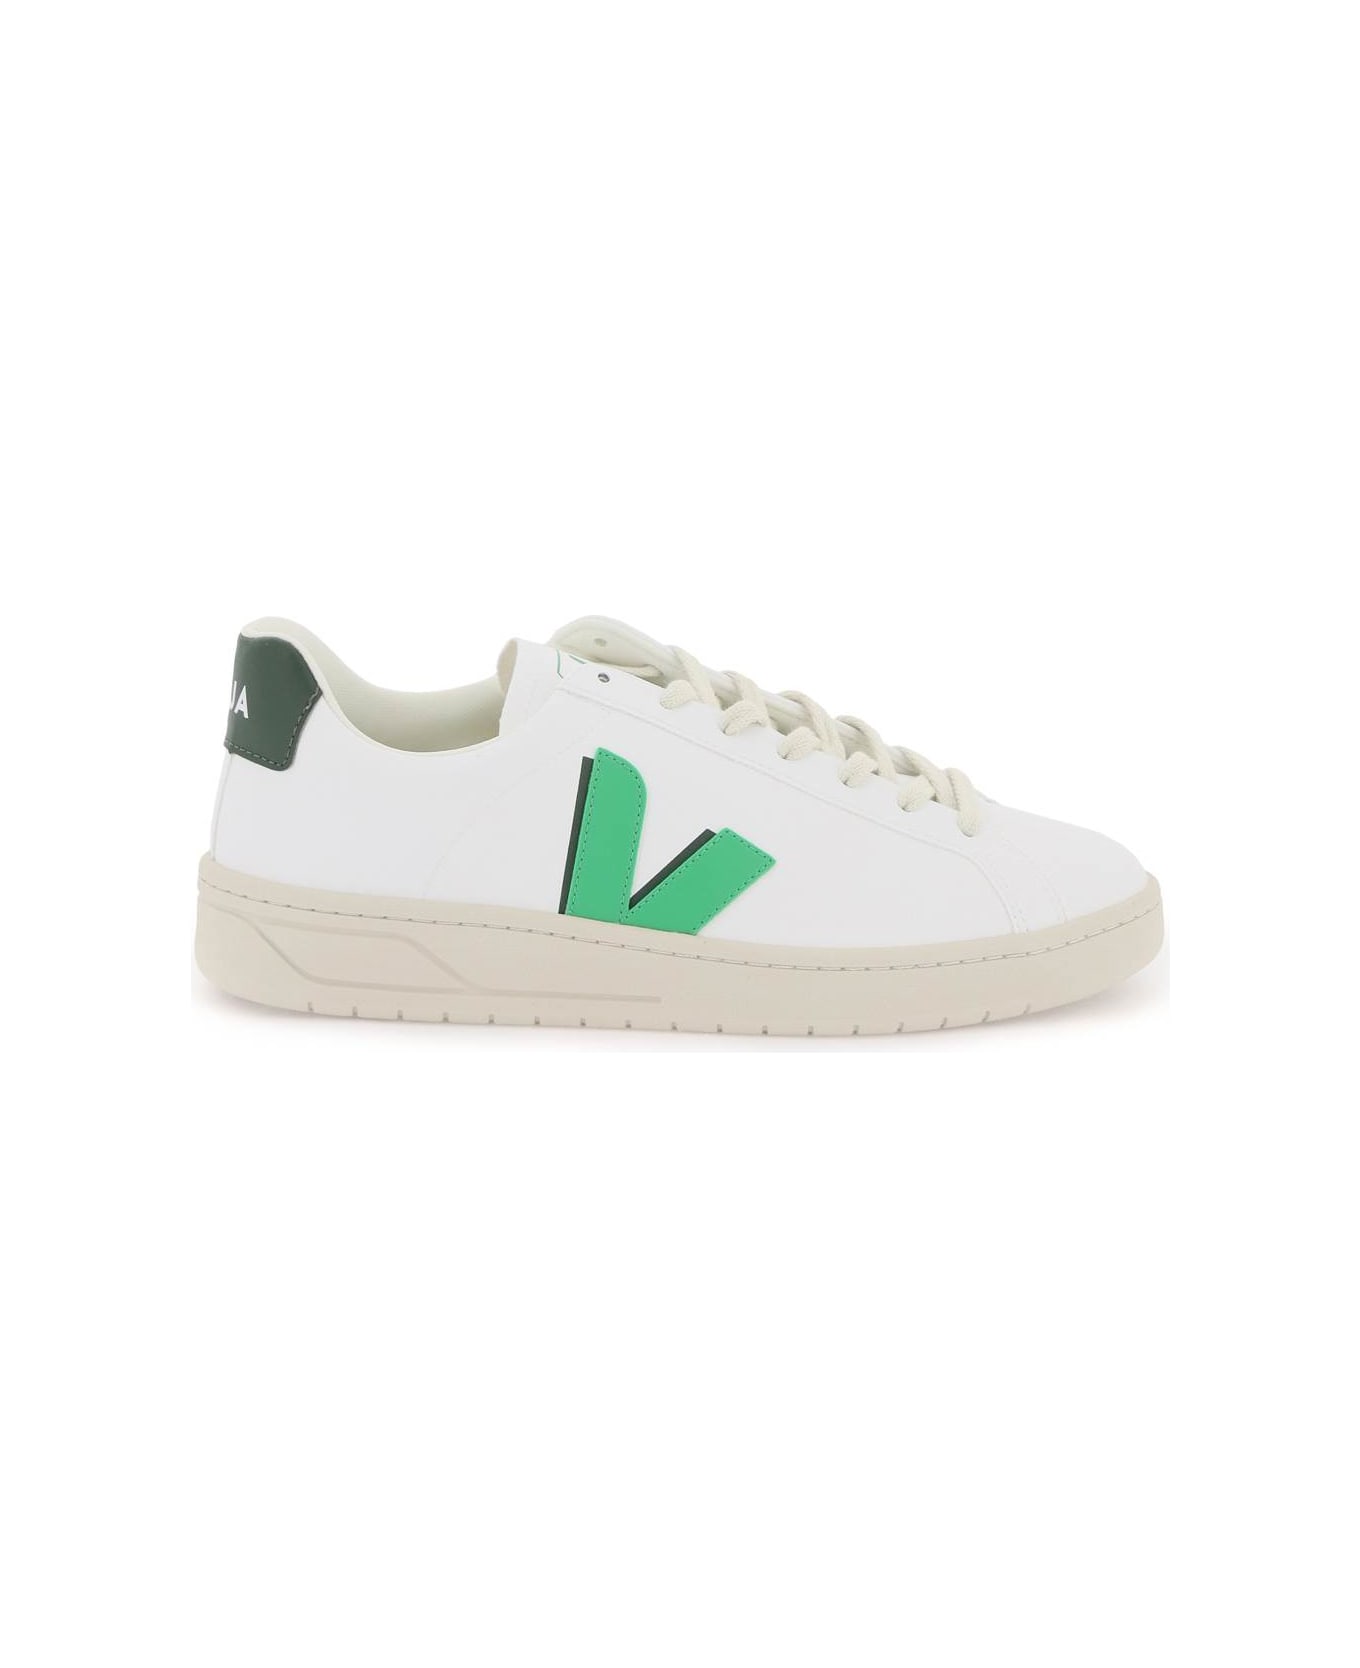 Veja C.w.l. Urca Vegan Sneakers - WHITE LEAF CYPRUS (White)